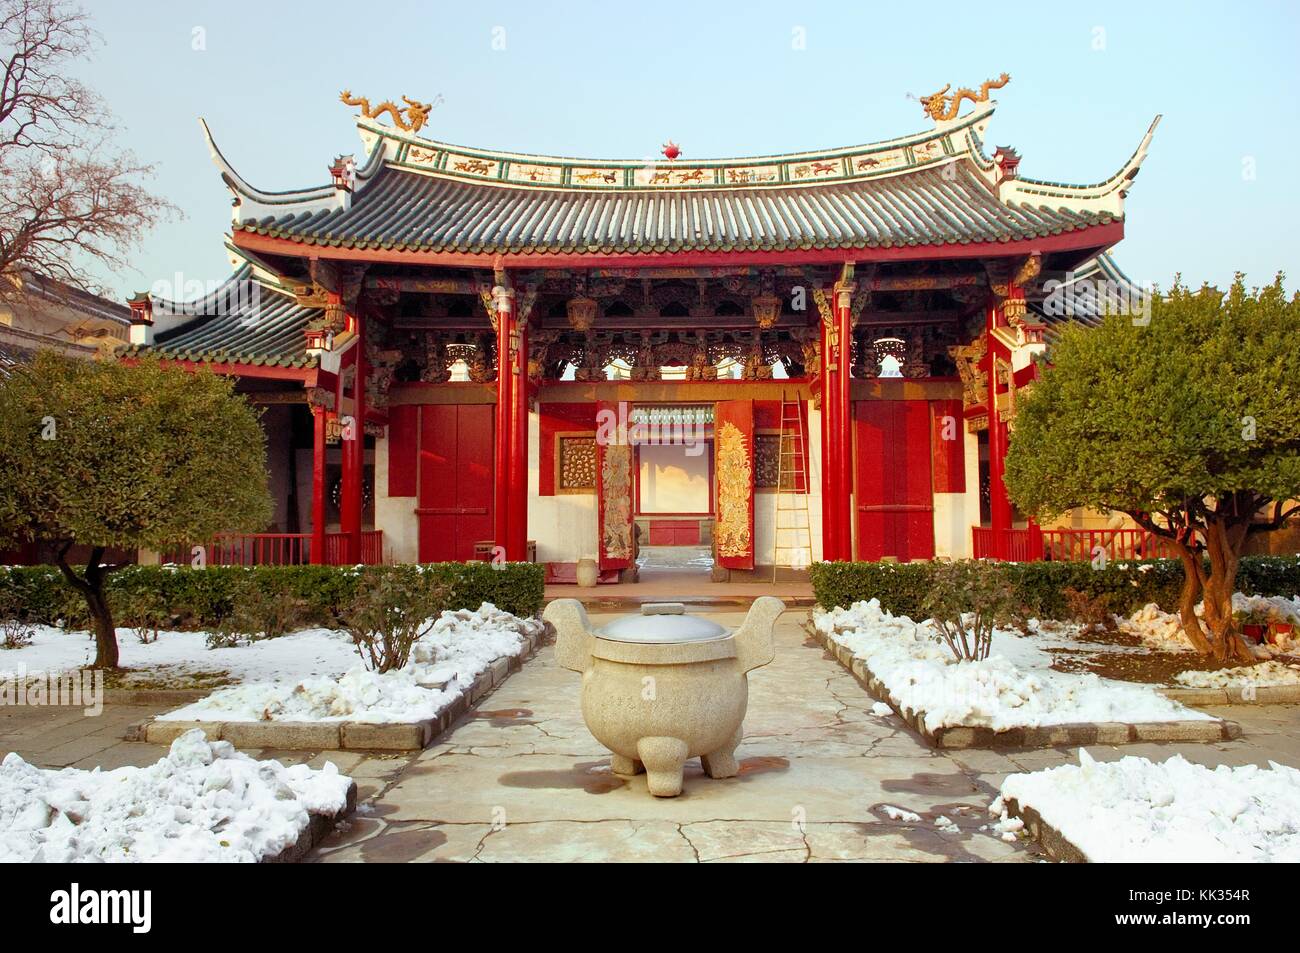 Tempel der himmlischen Königin, auch als fujian Guildhall bekannt. yantai, Provinz Shandong, China. Hof und Kloster gate Stockfoto